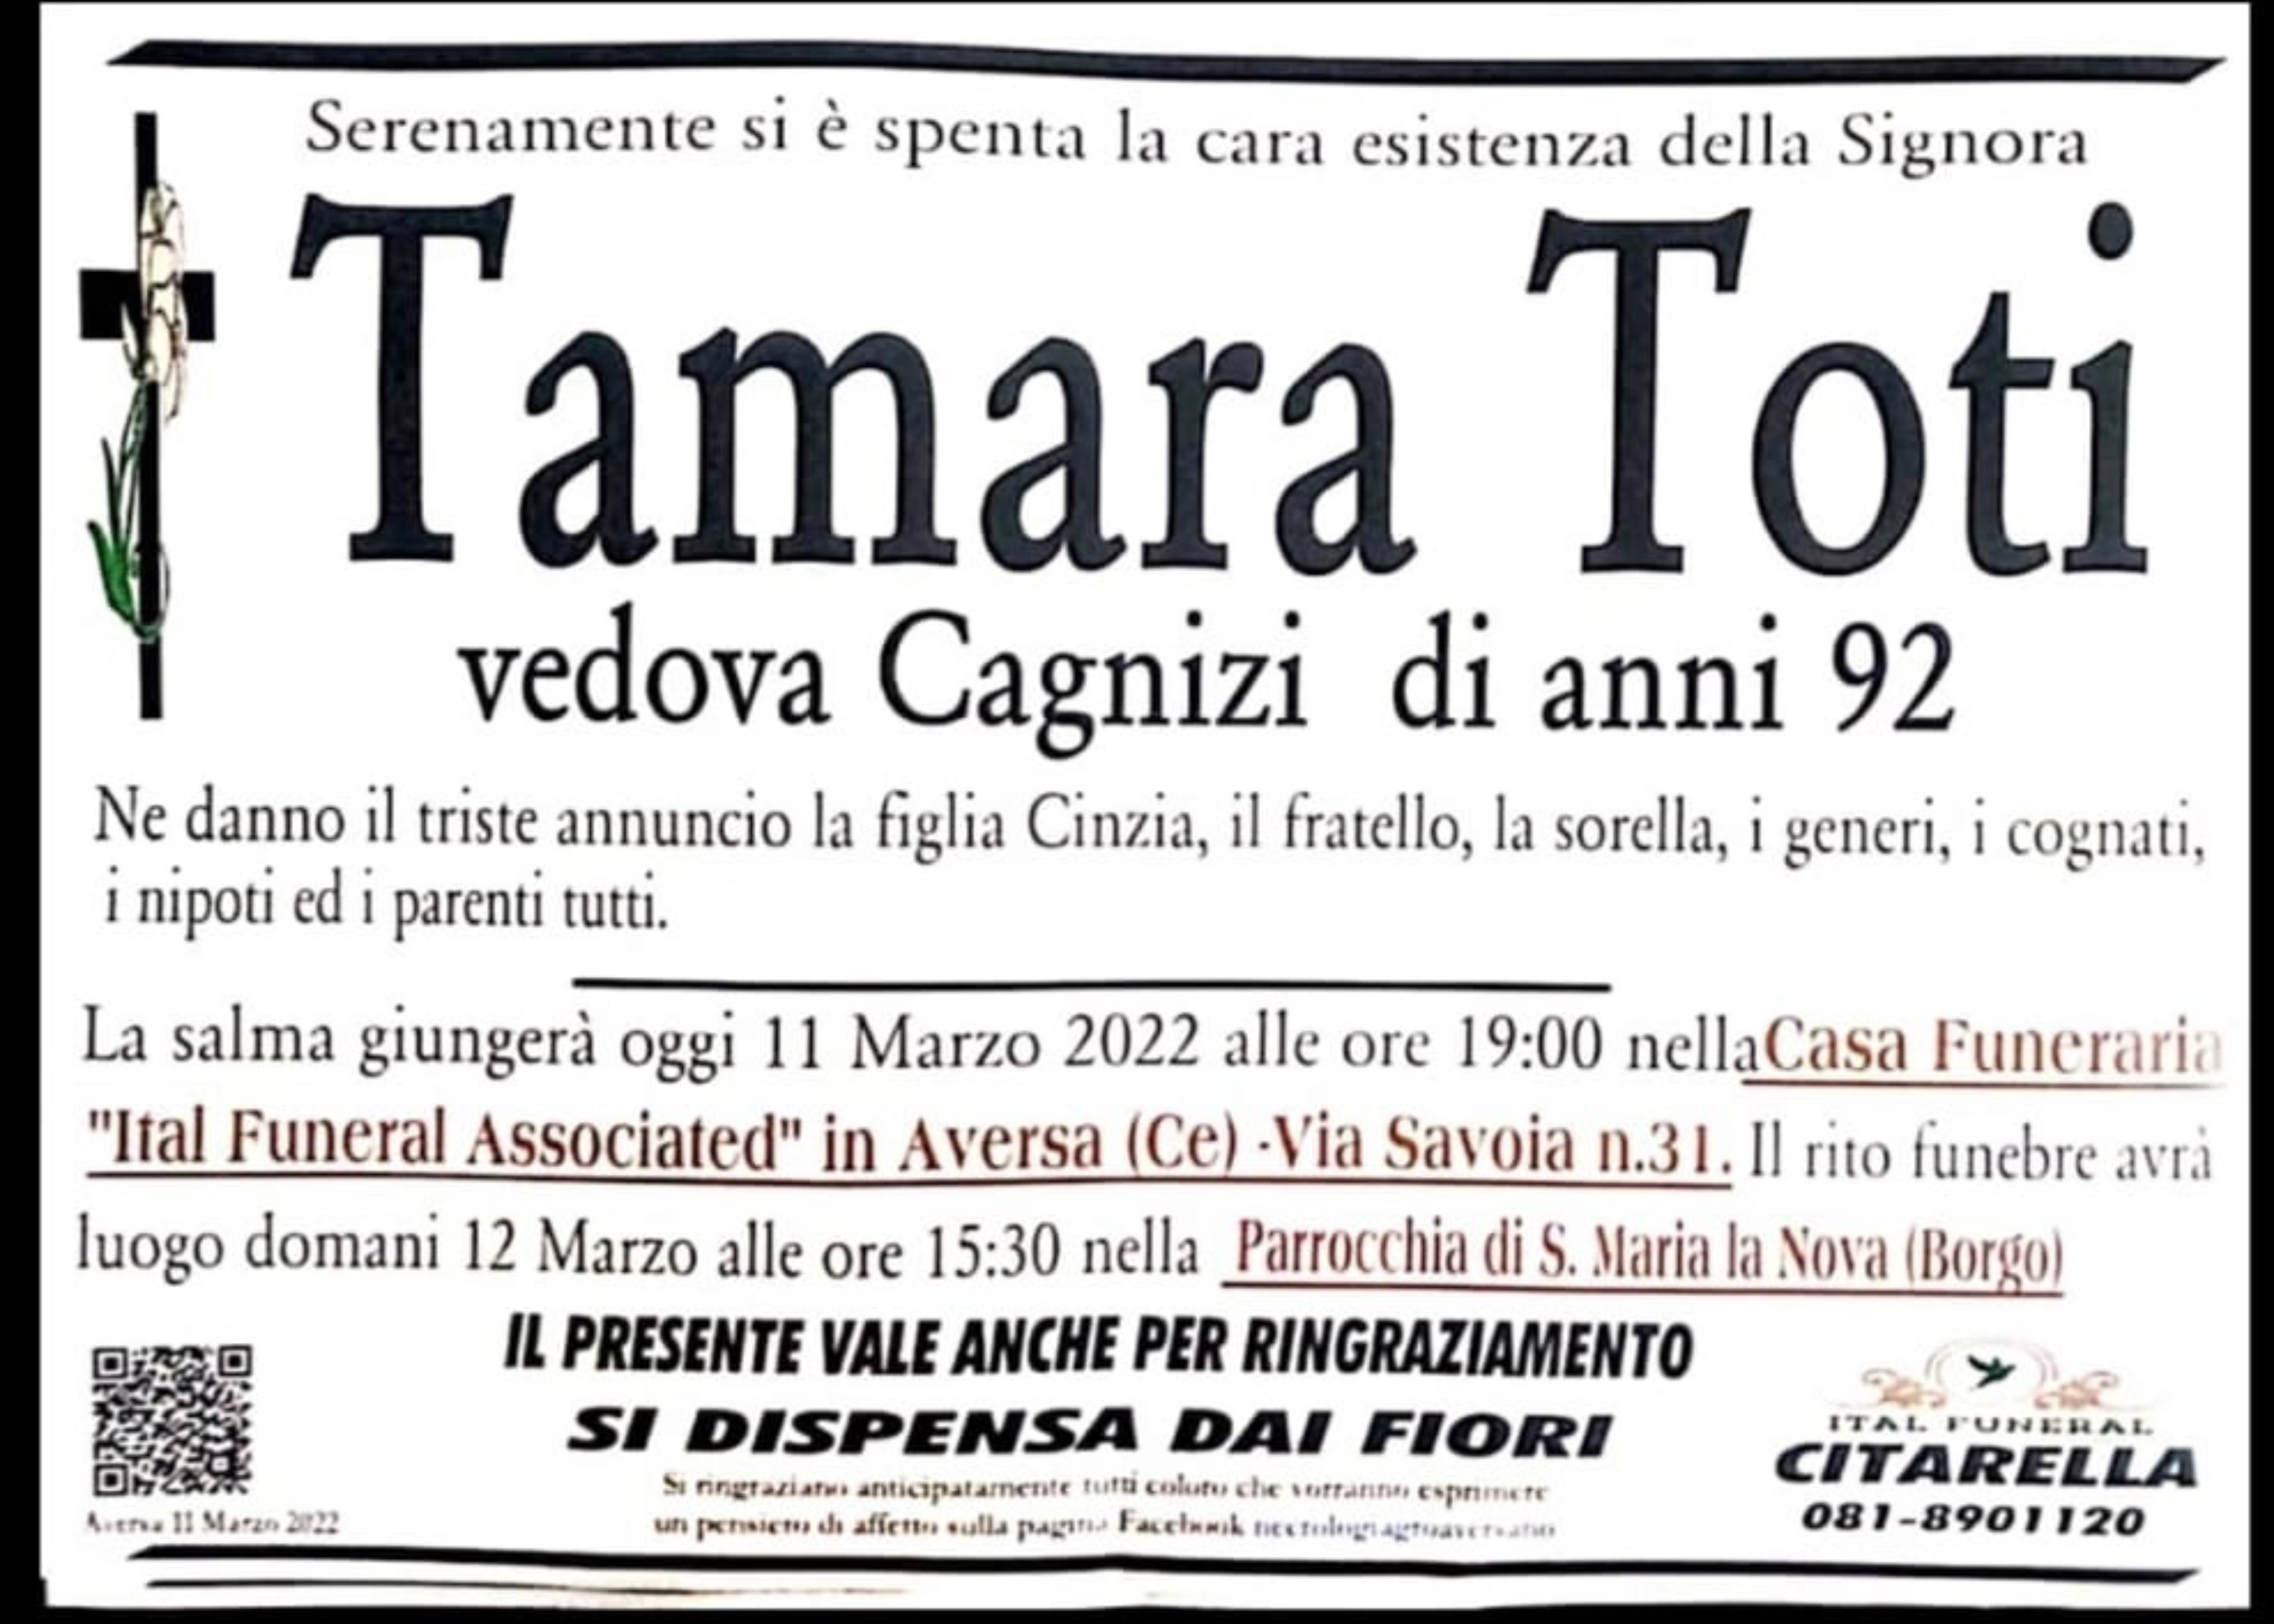 Tamara Toti